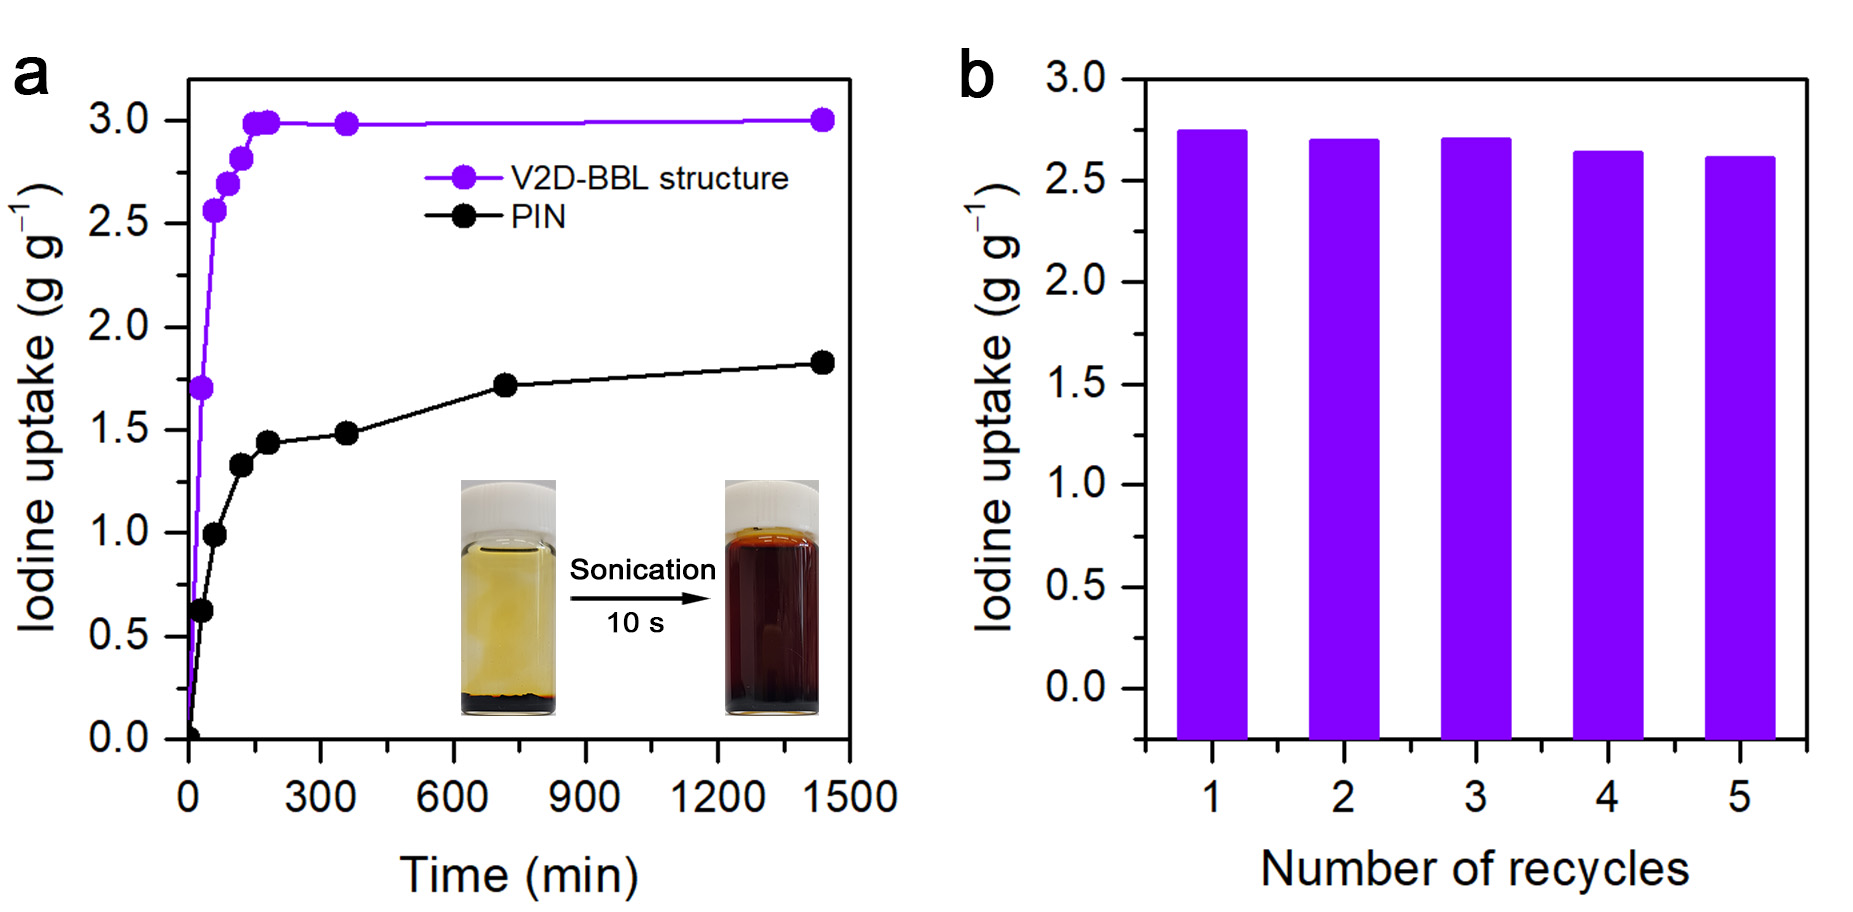 그림2. V2D-BBL structure의 아이오딘(I₂) 증기 흡착 능력 및 재활용성 평가